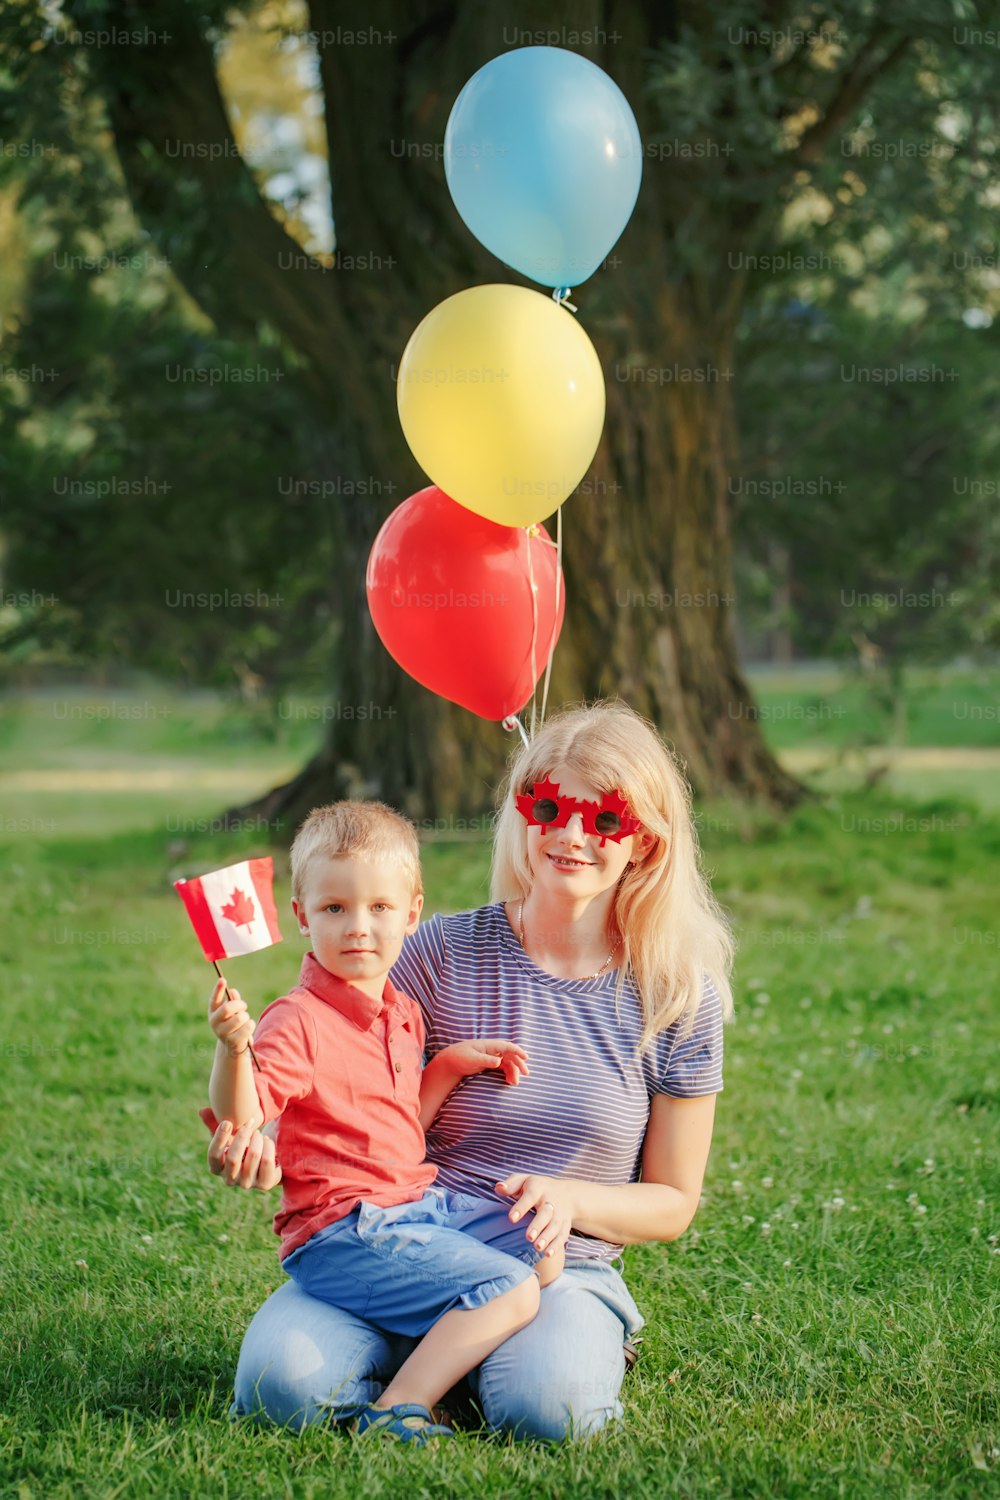 Une mère de famille de citoyens avec son enfant célèbre la fête nationale du Canada le 1er juillet. Mère caucasienne avec bébé garçon en bas âge portant de drôles de lunettes de soleil en forme de feuille d’érable et de cœur.